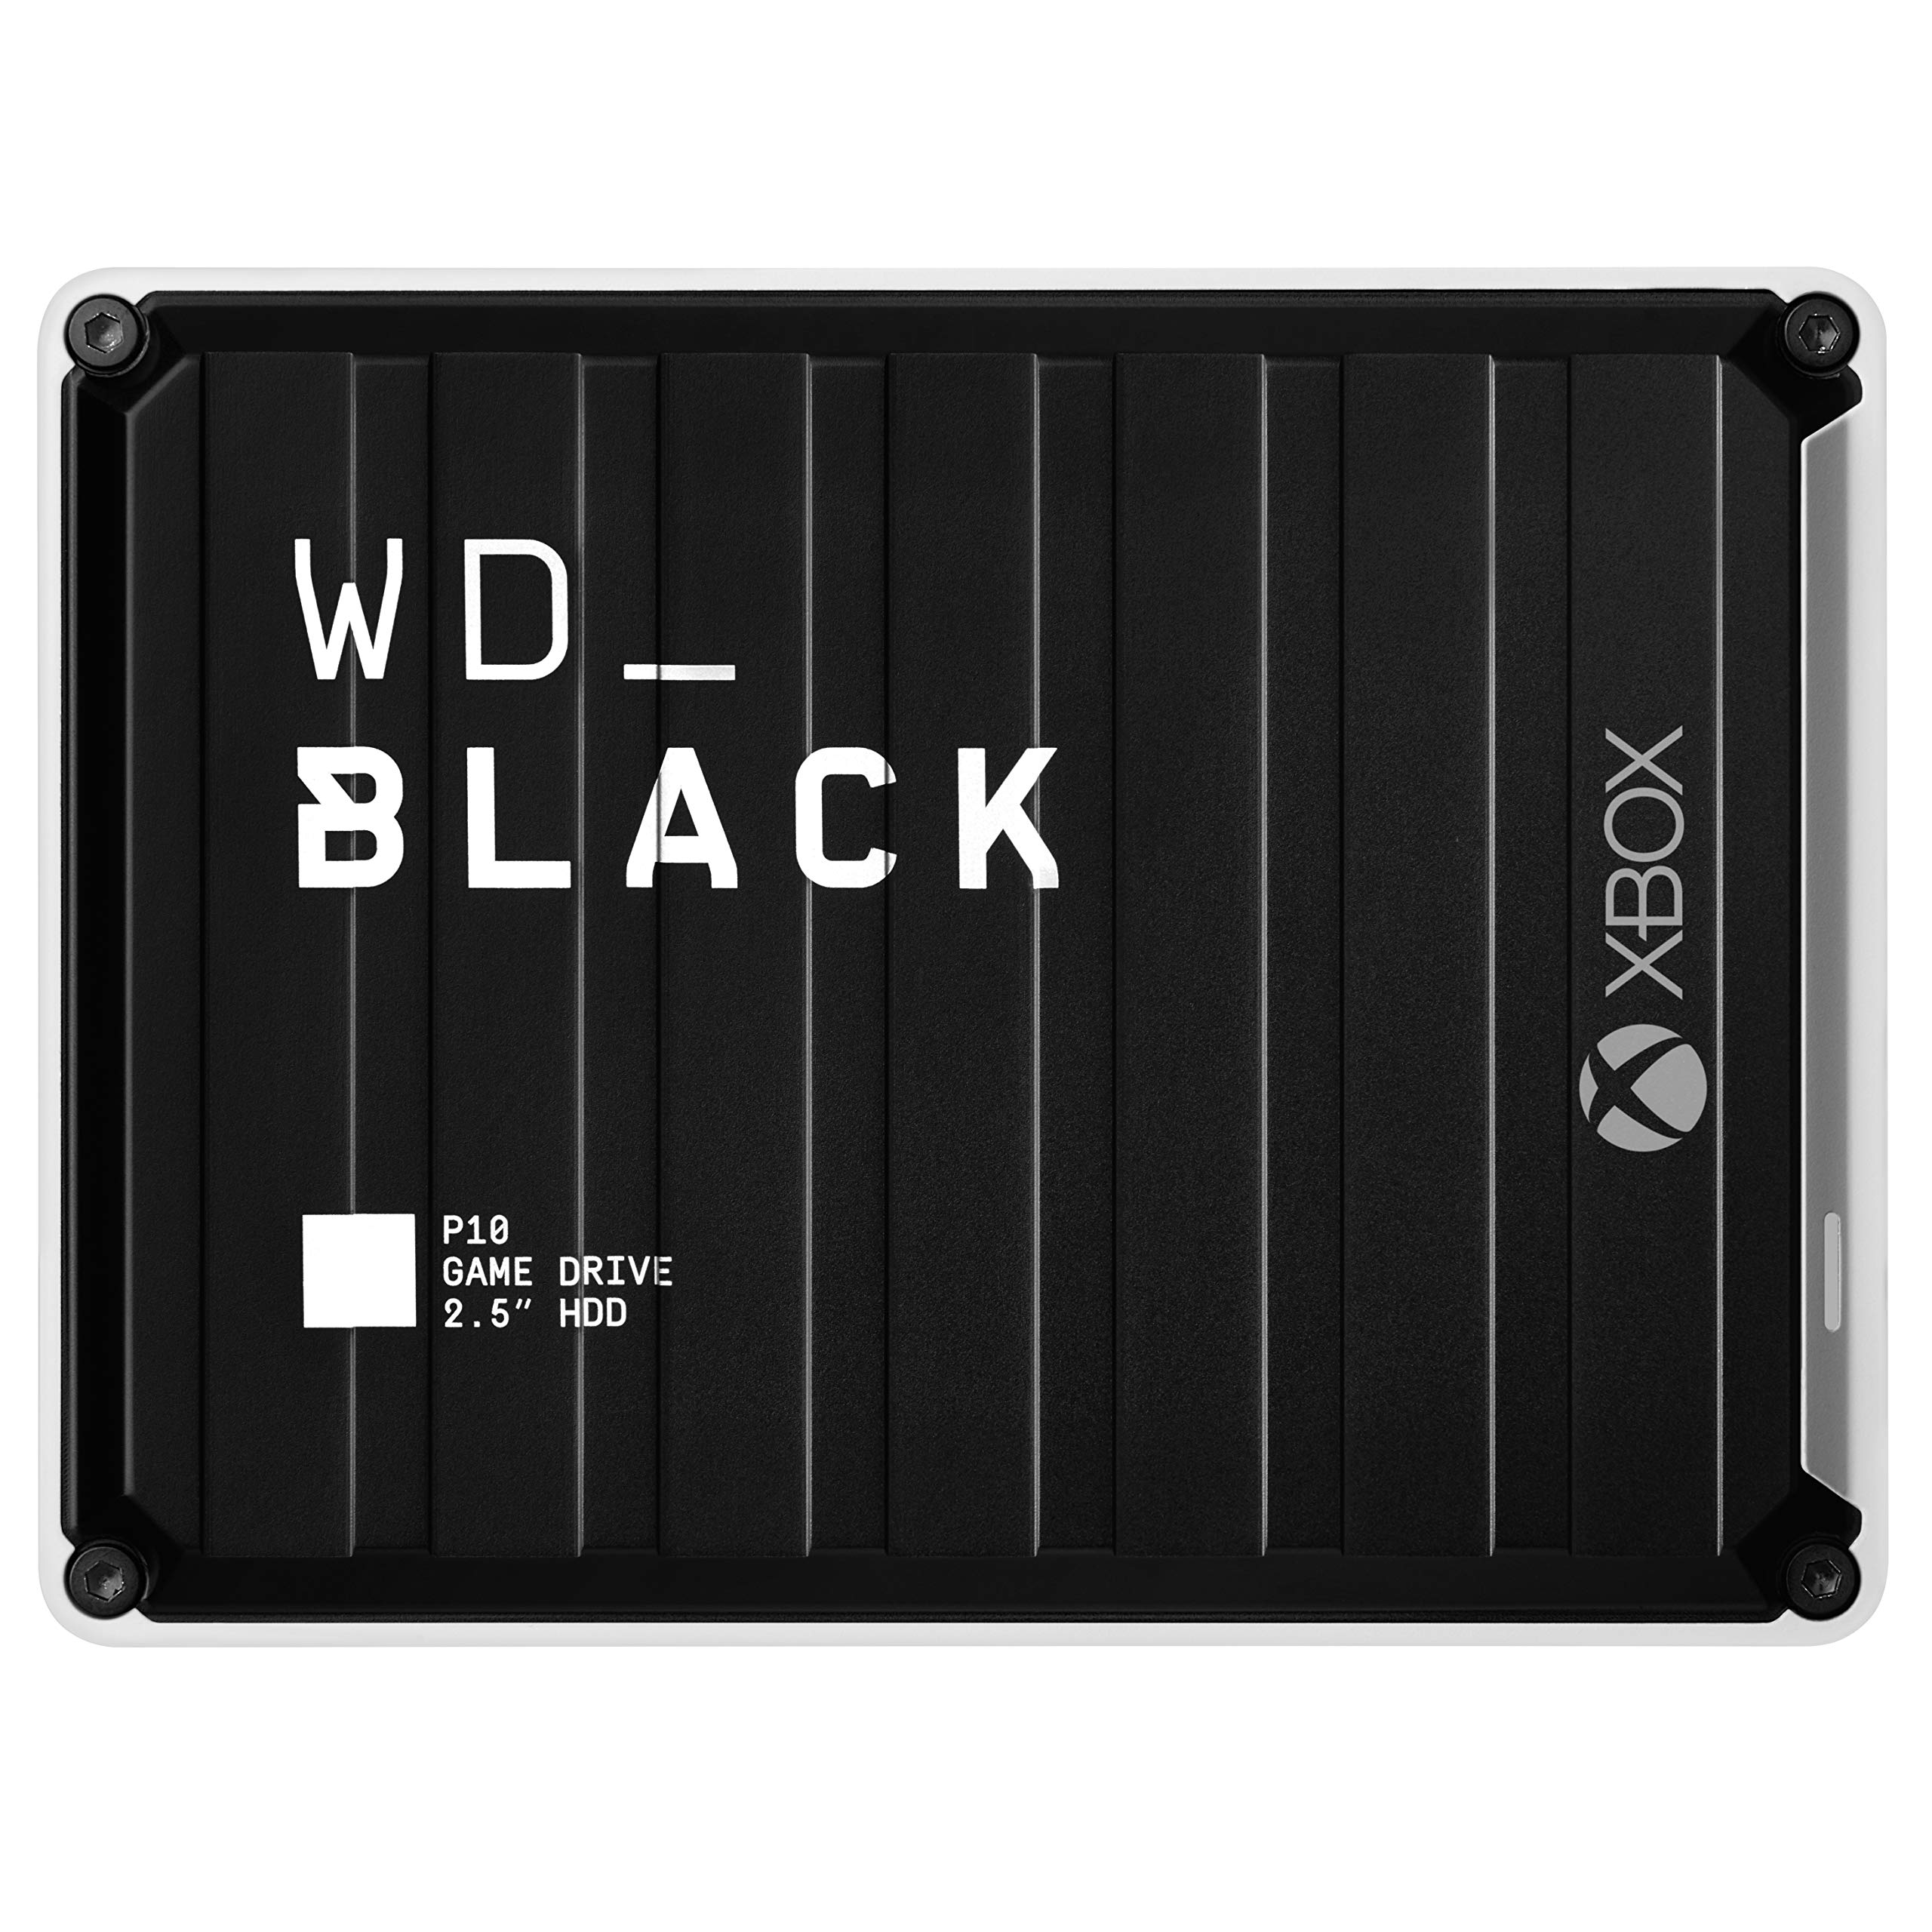 WD_BLACK P10 Game Drive for Xbox 2 TB (1 Monat Xbox Game Pass Ultimate, Übertragungsgeschwindigkeiten bis 130 MB/s, für Xbox) Schwarz mit weißem Rand